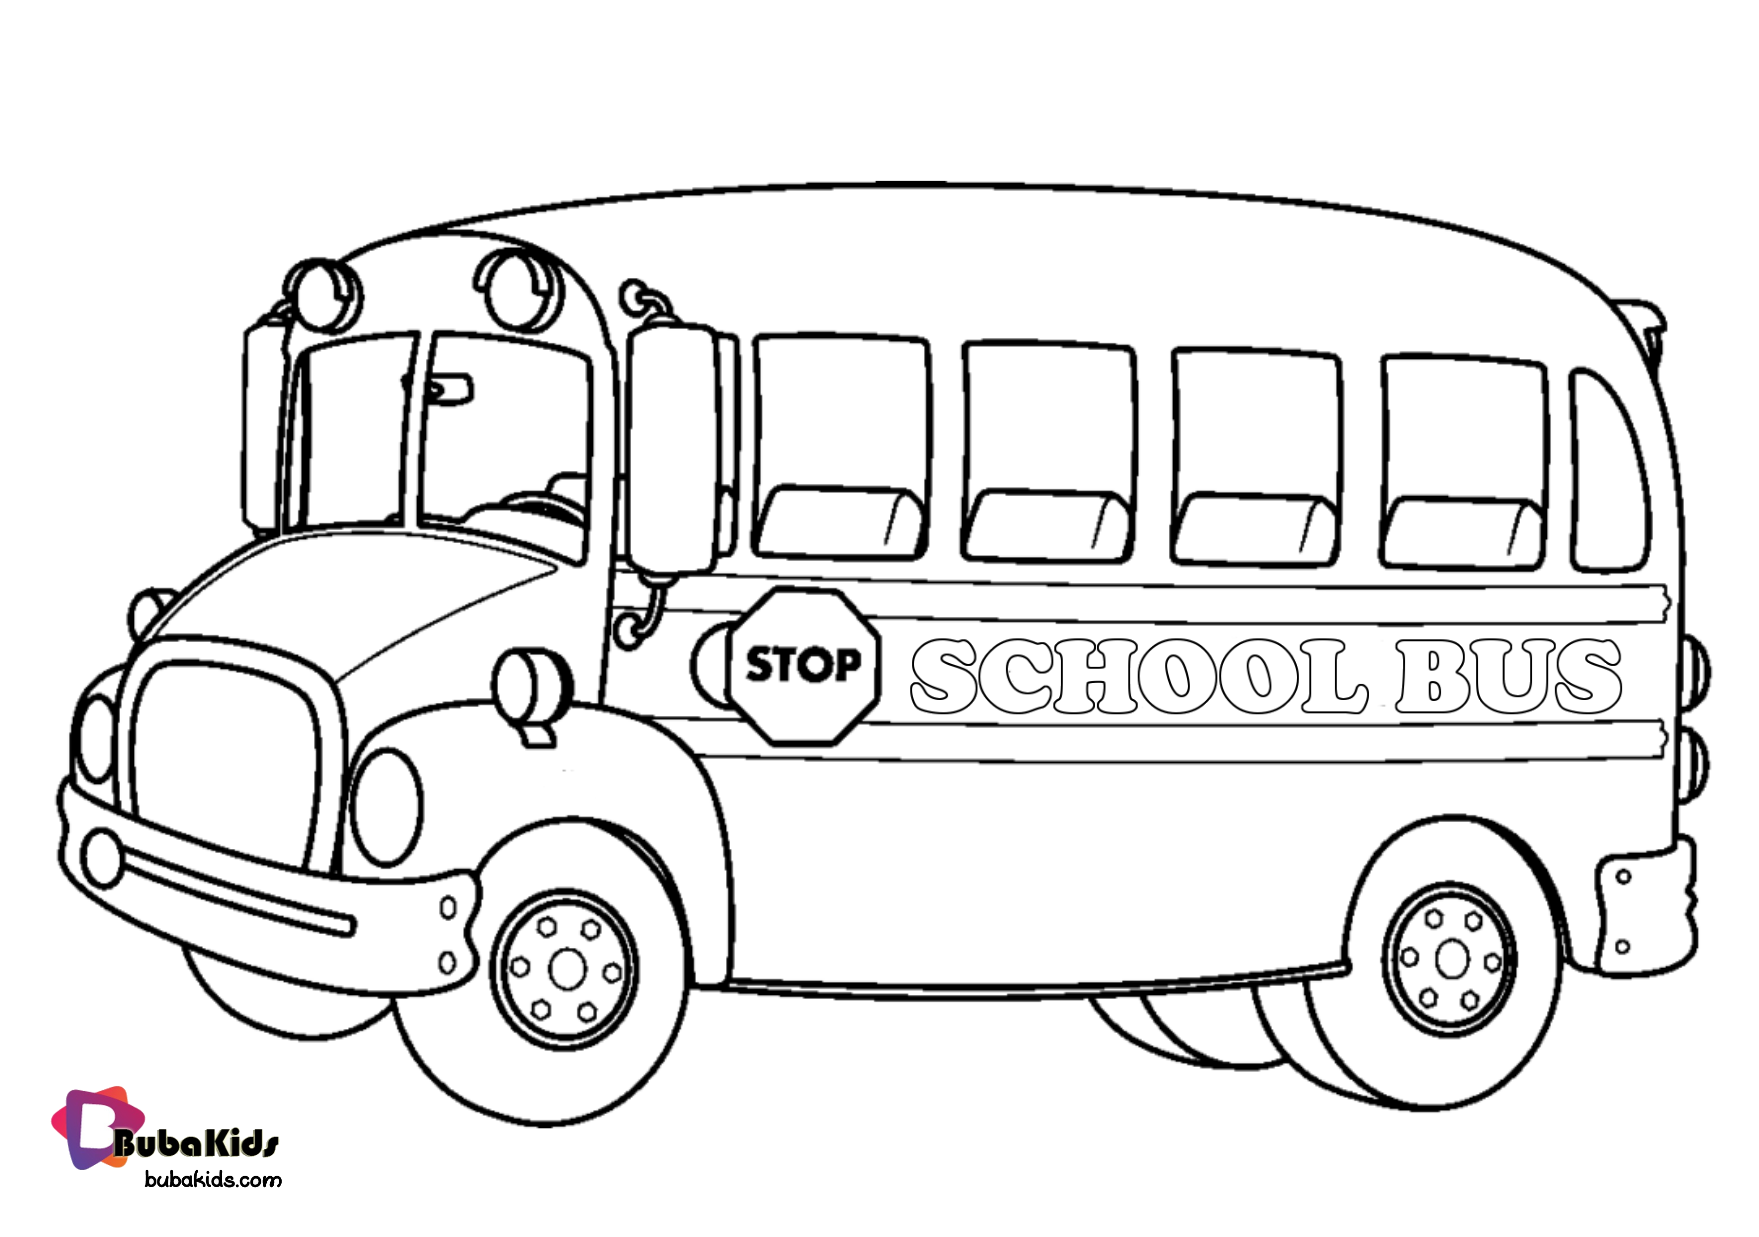 School Bus coloring page.